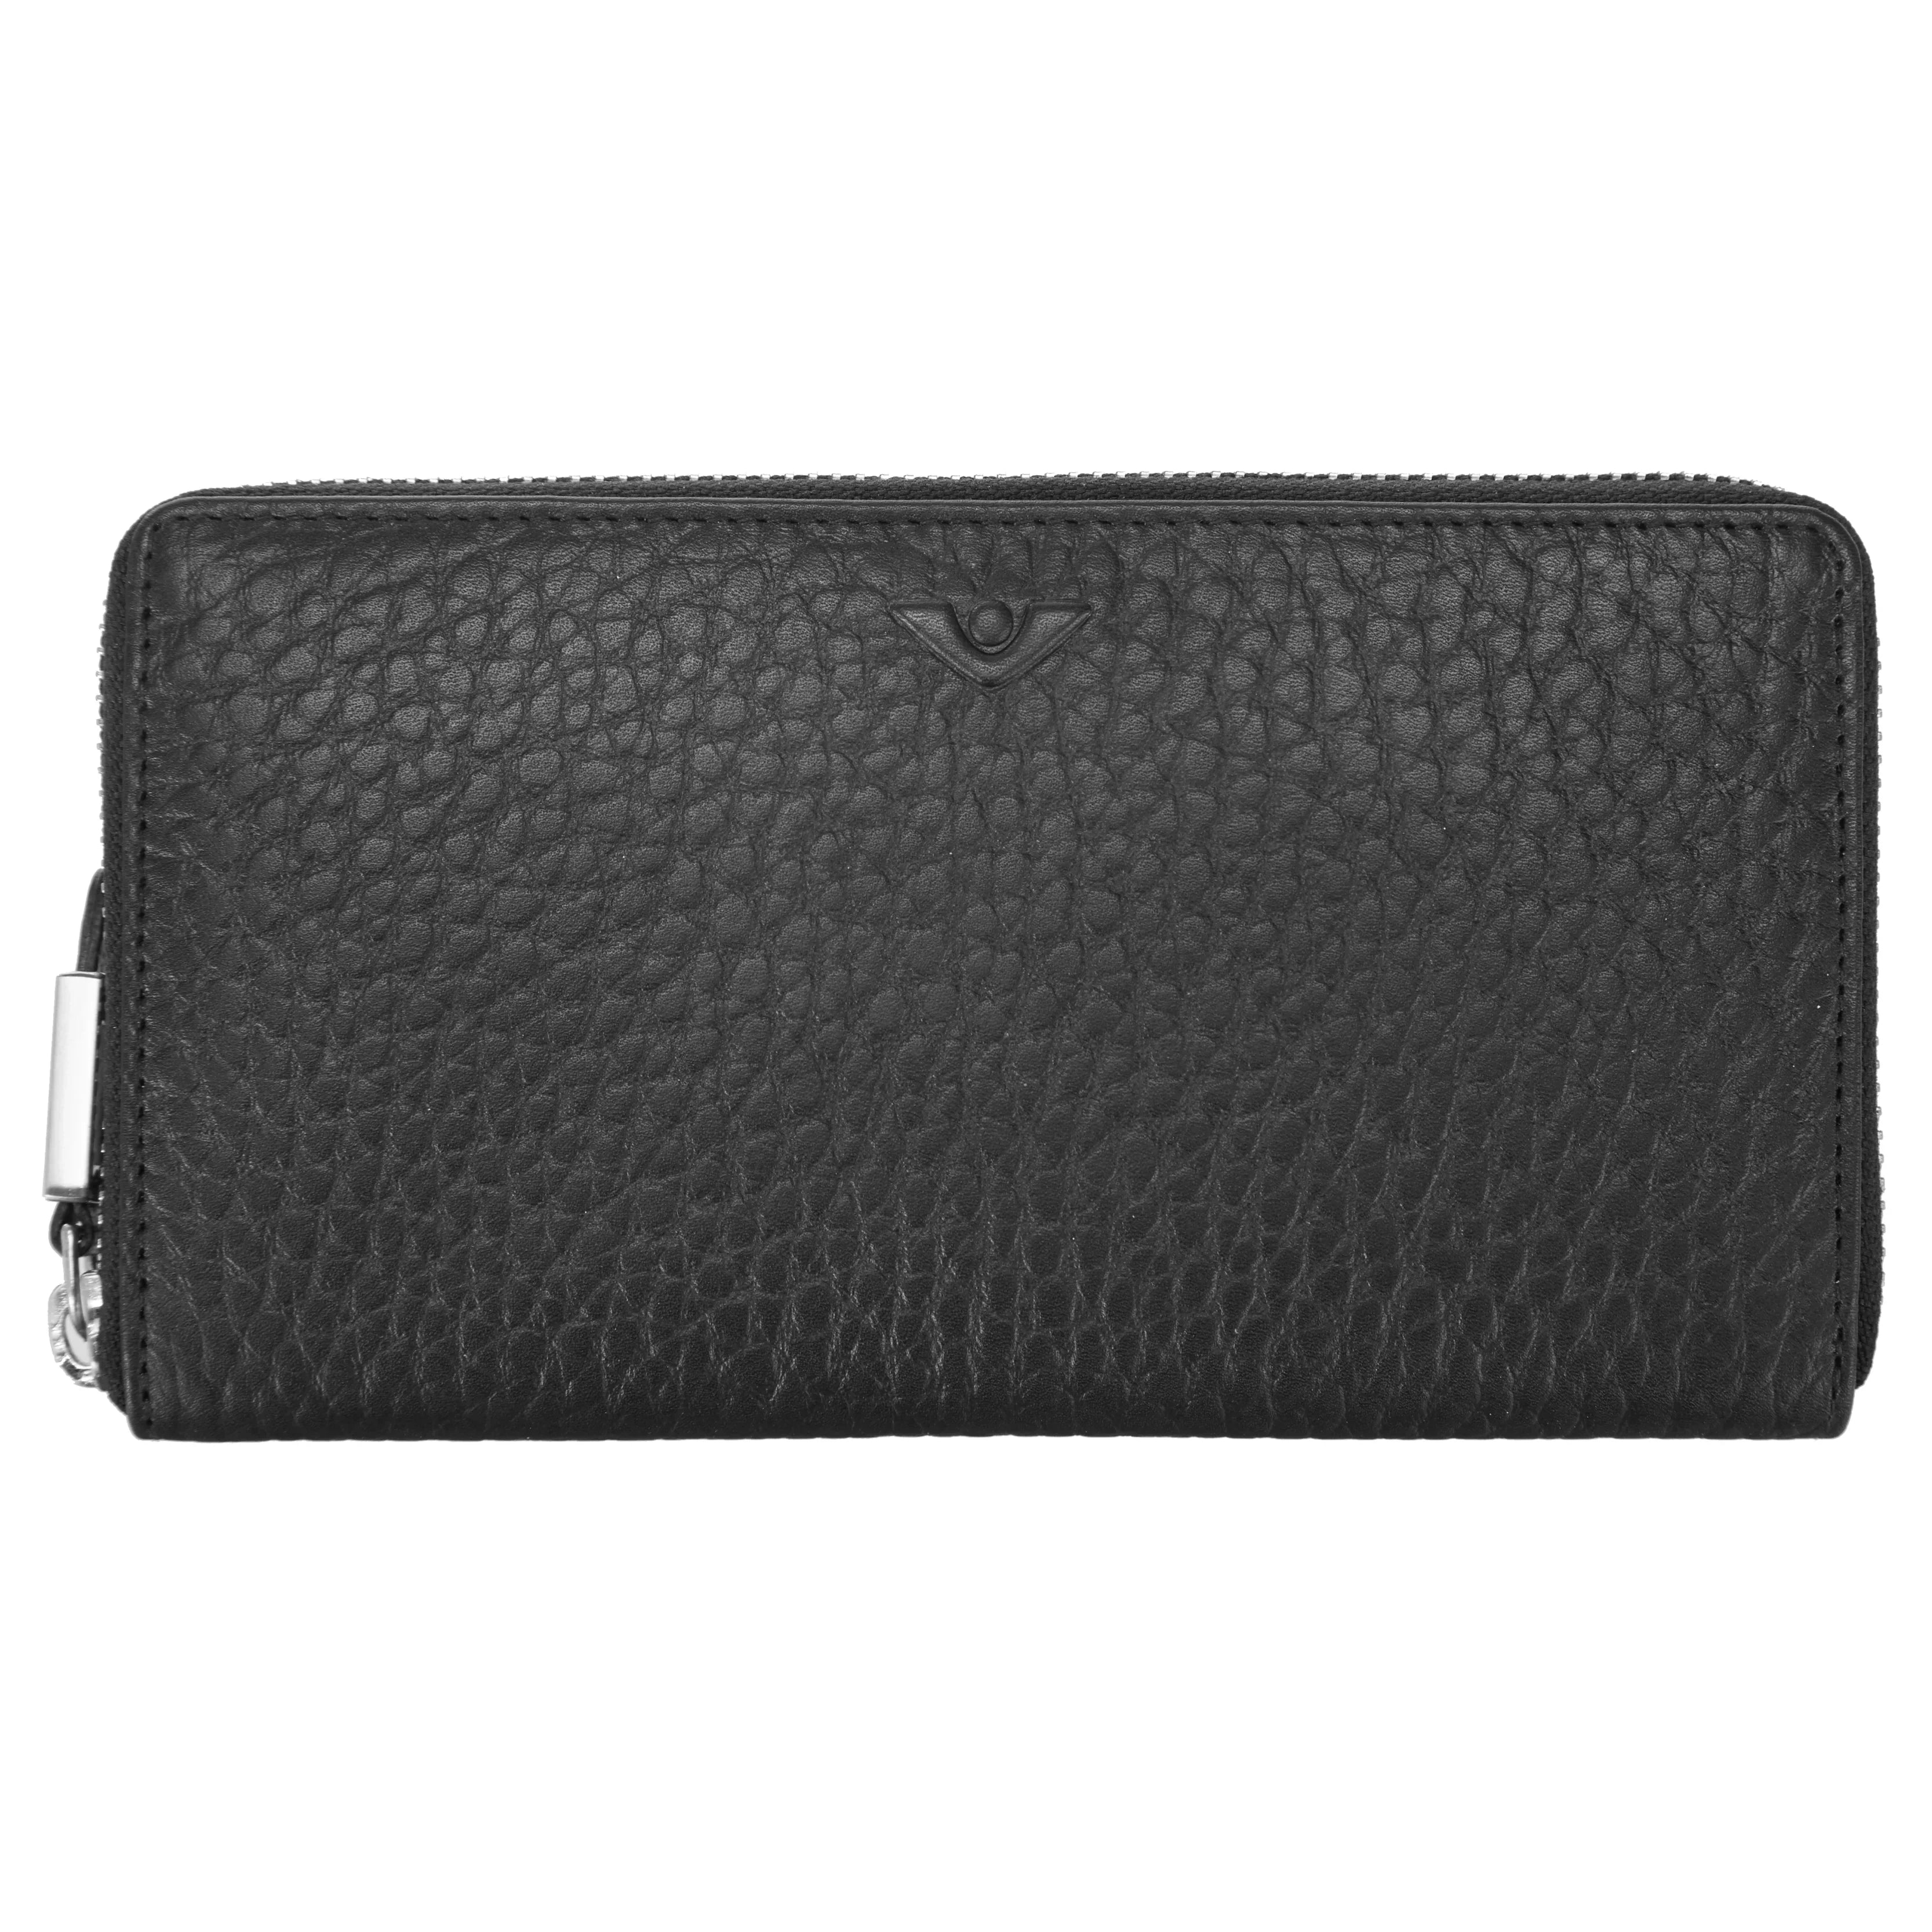 VOi-Design Hirsch Amy zipper wallet 19 cm - Black